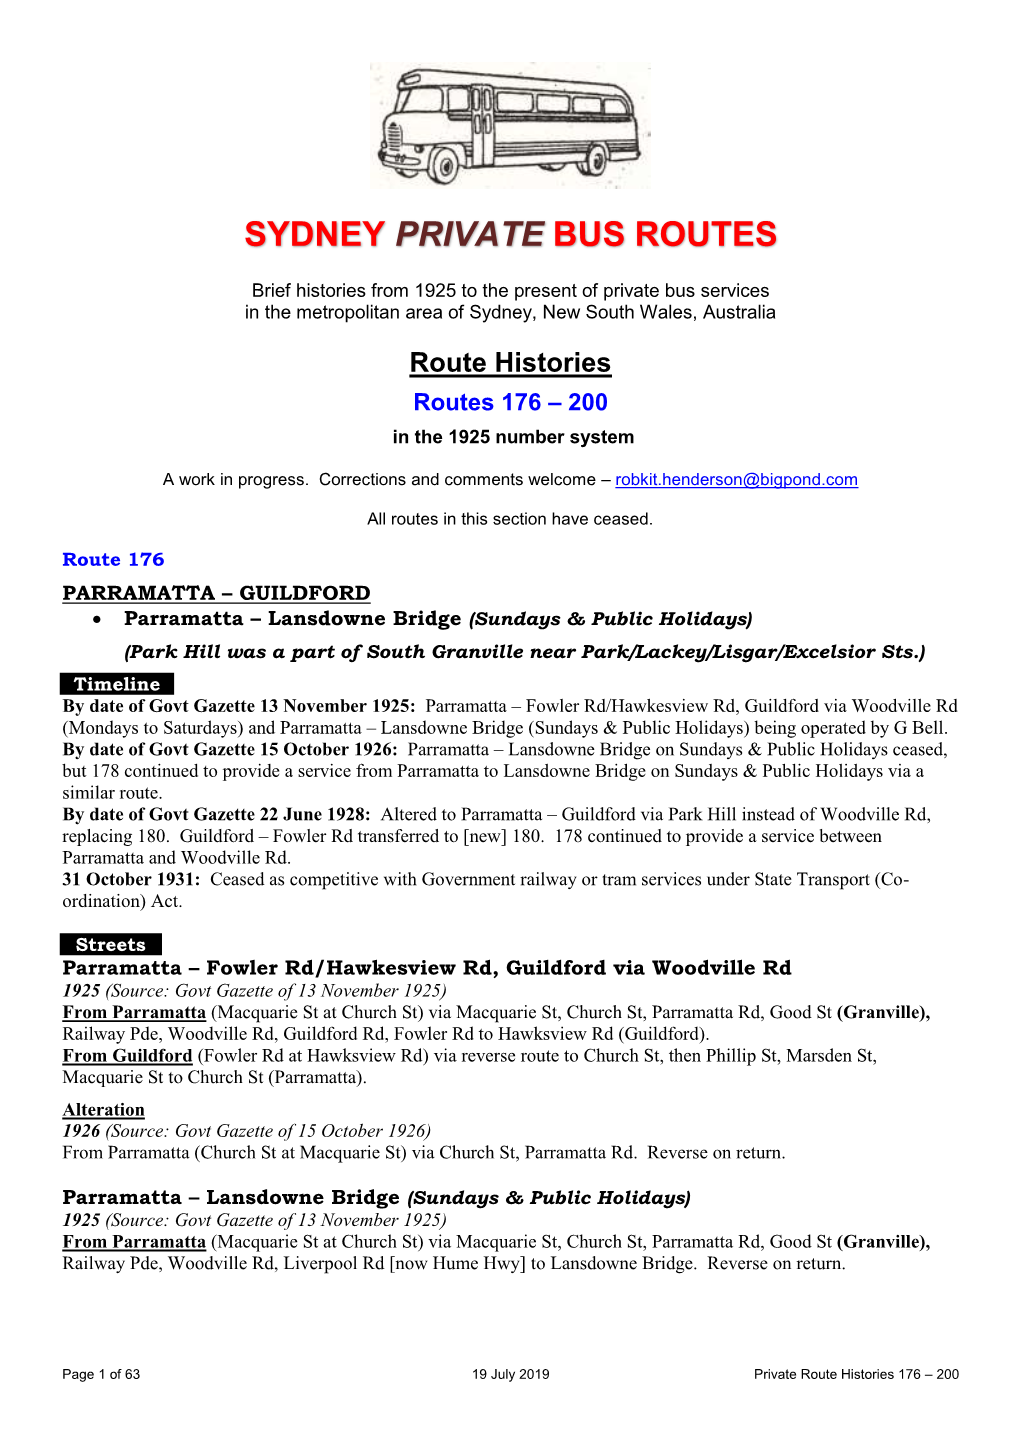 Sydney Private Bus Routes 176-200